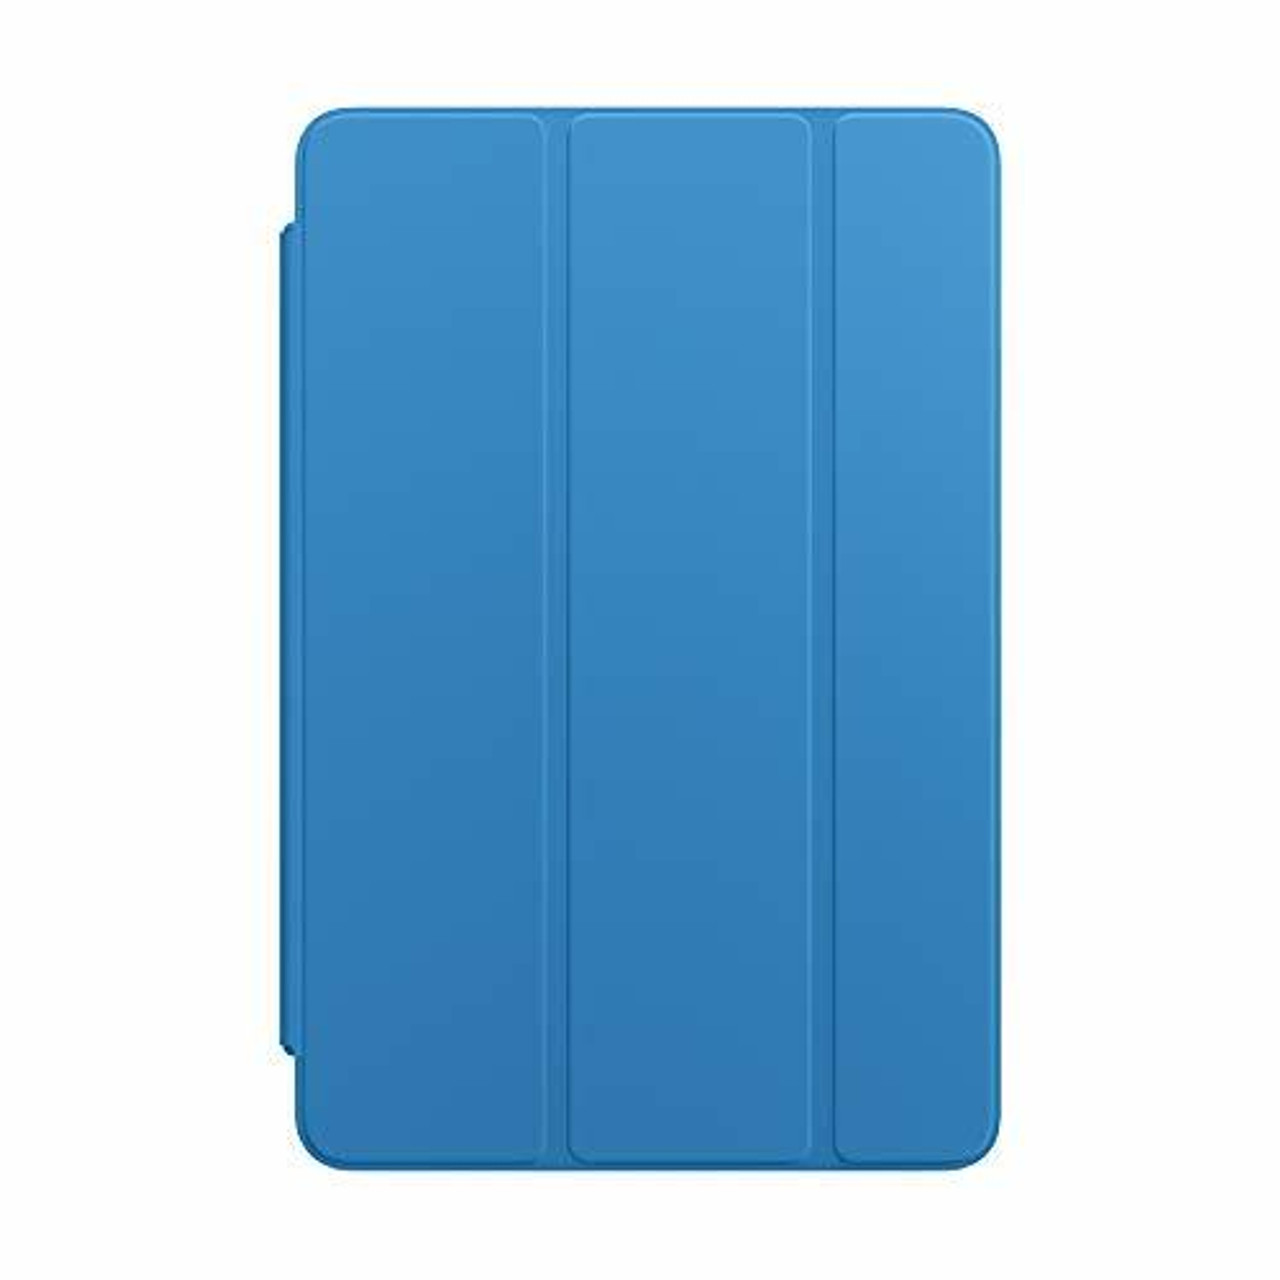 Apple - Smart Cover for iPad mini 5th Gen and mini 4th Gen